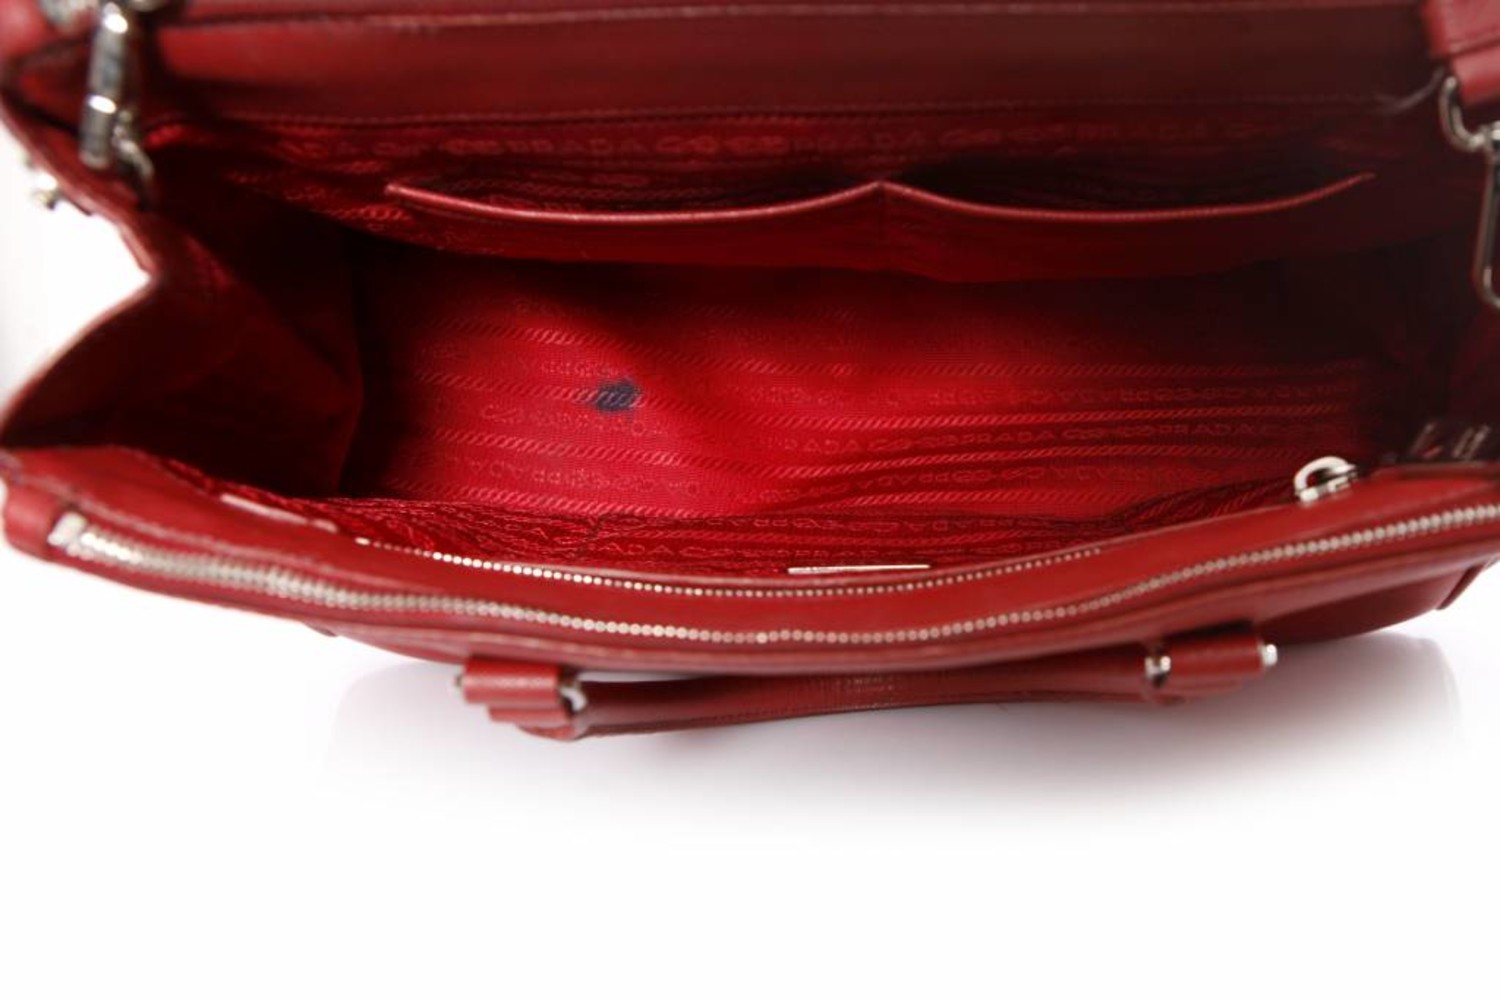 Prada, Galleria tote bag in red saffiano leather. - Unique Designer Pieces